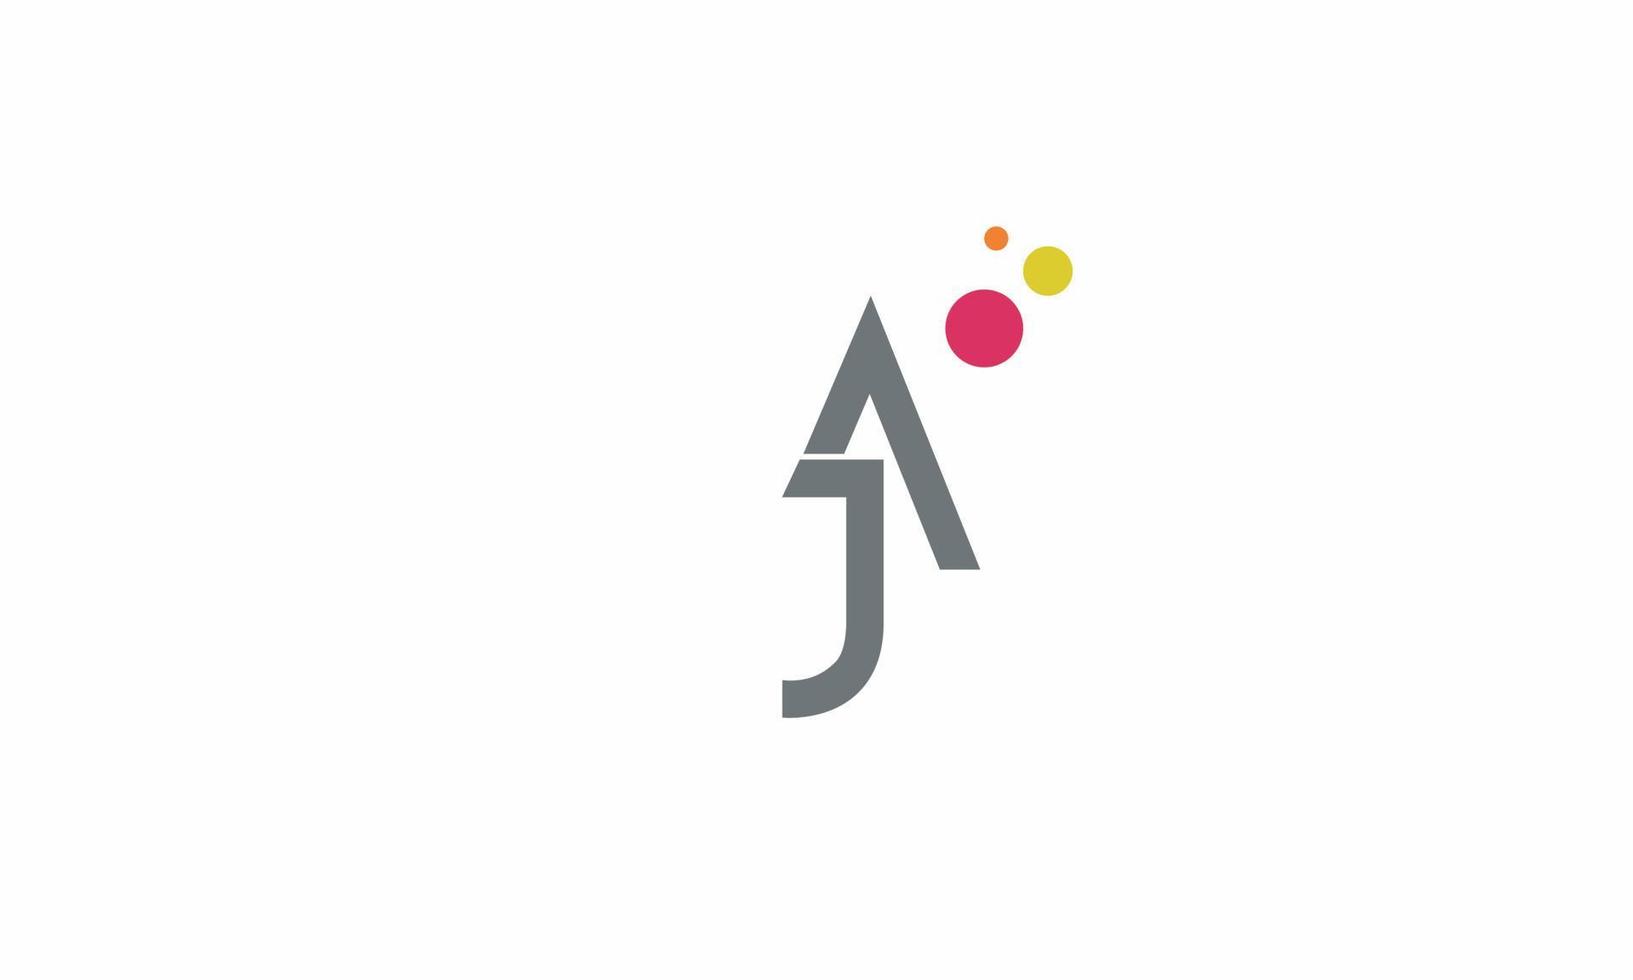 alfabeto lettere iniziali monogramma logo ja, aj, j e a vettore